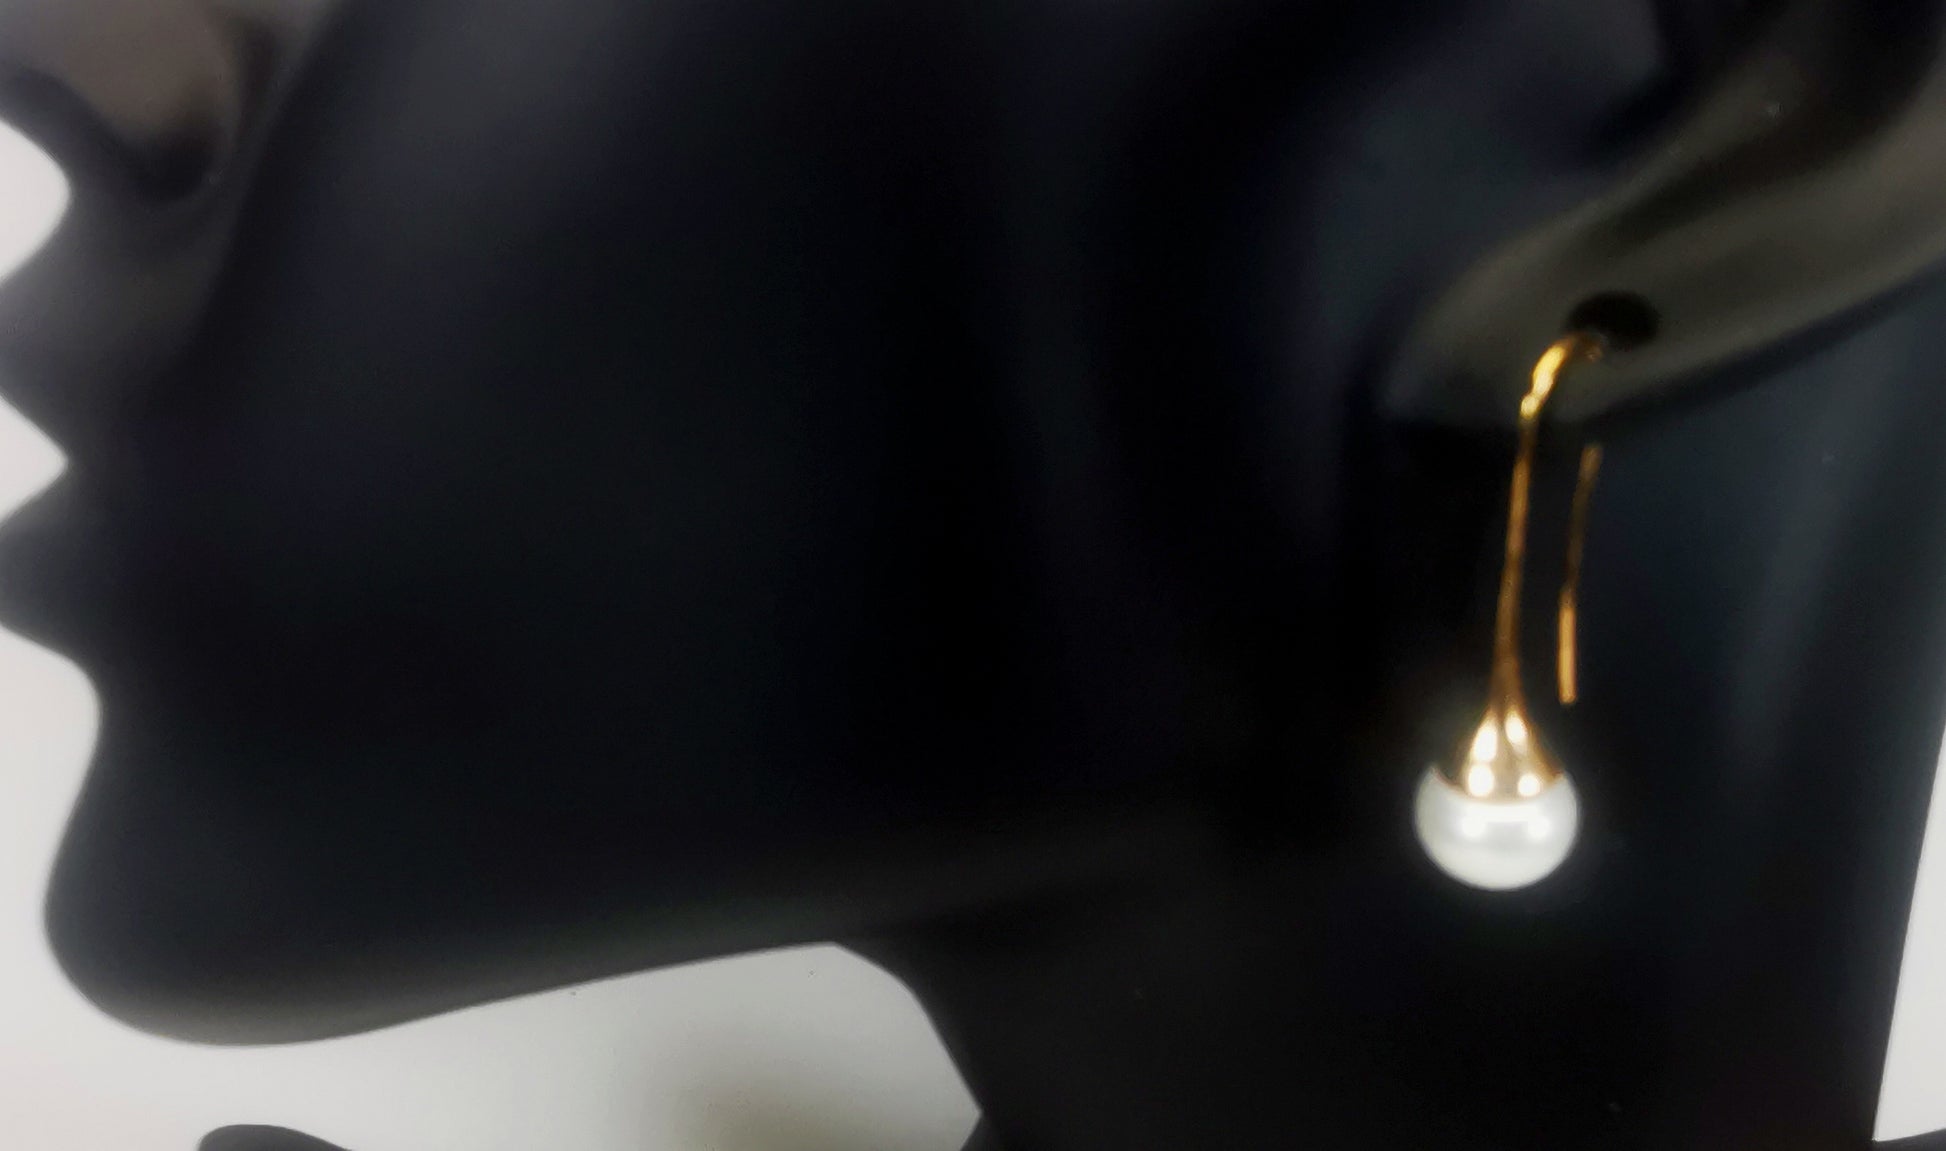 Boucles d'oreilles perles de culture blanches 9mm sur pendants longs plaqués or. représentées par une boucle accrochée à l'oreilles d'un mannequin buste noir. Vue en gros plan de trois quarts face.